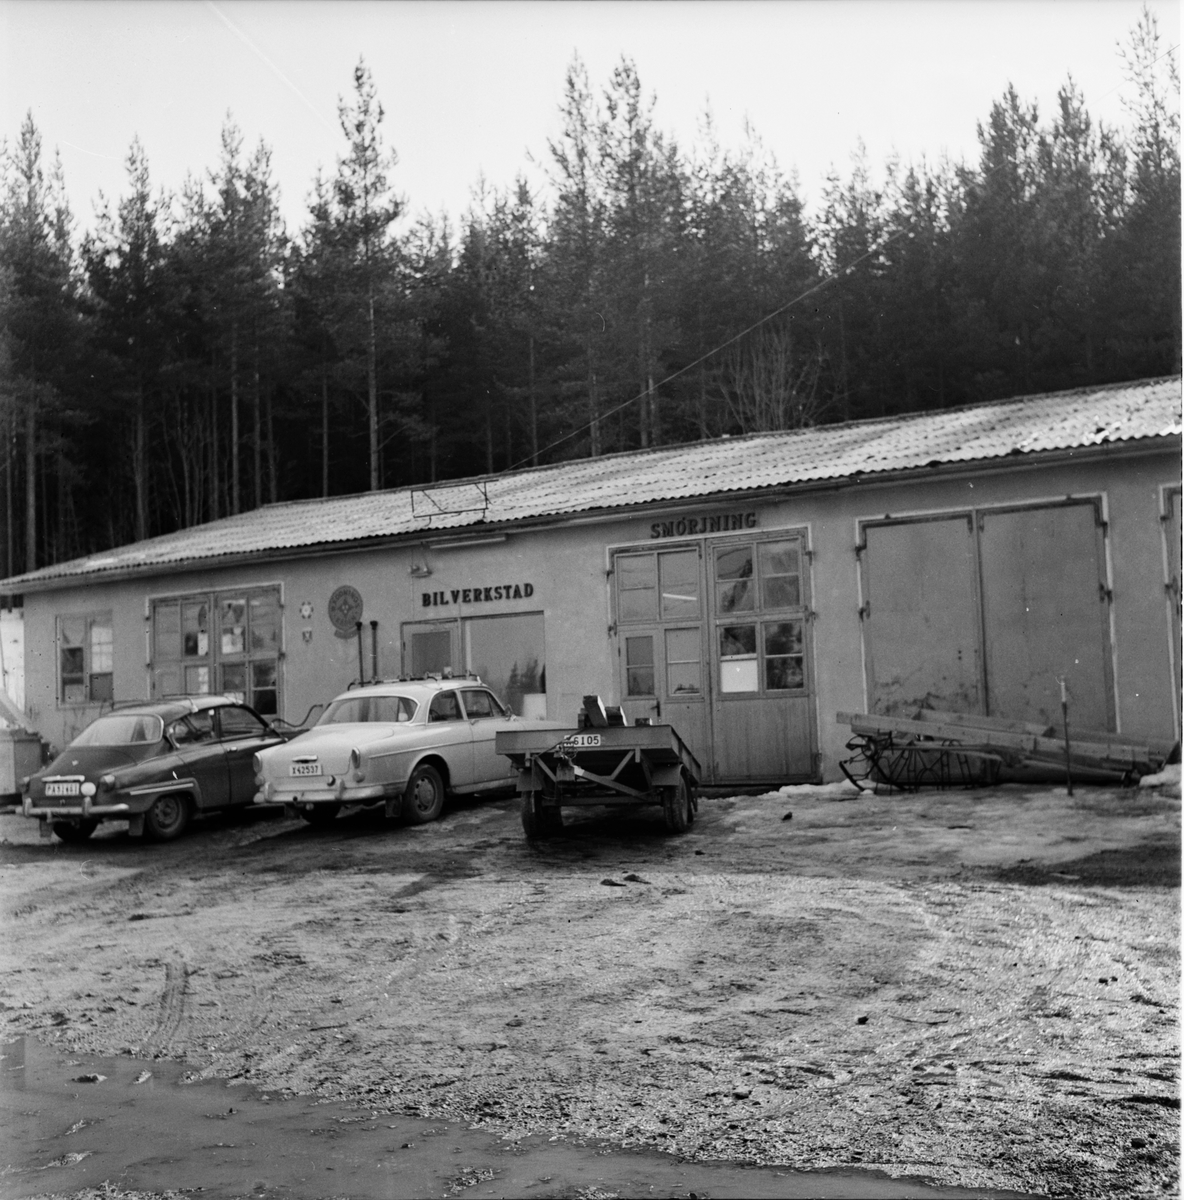 Simeå,
Fyra båtbyggare,
April 1972